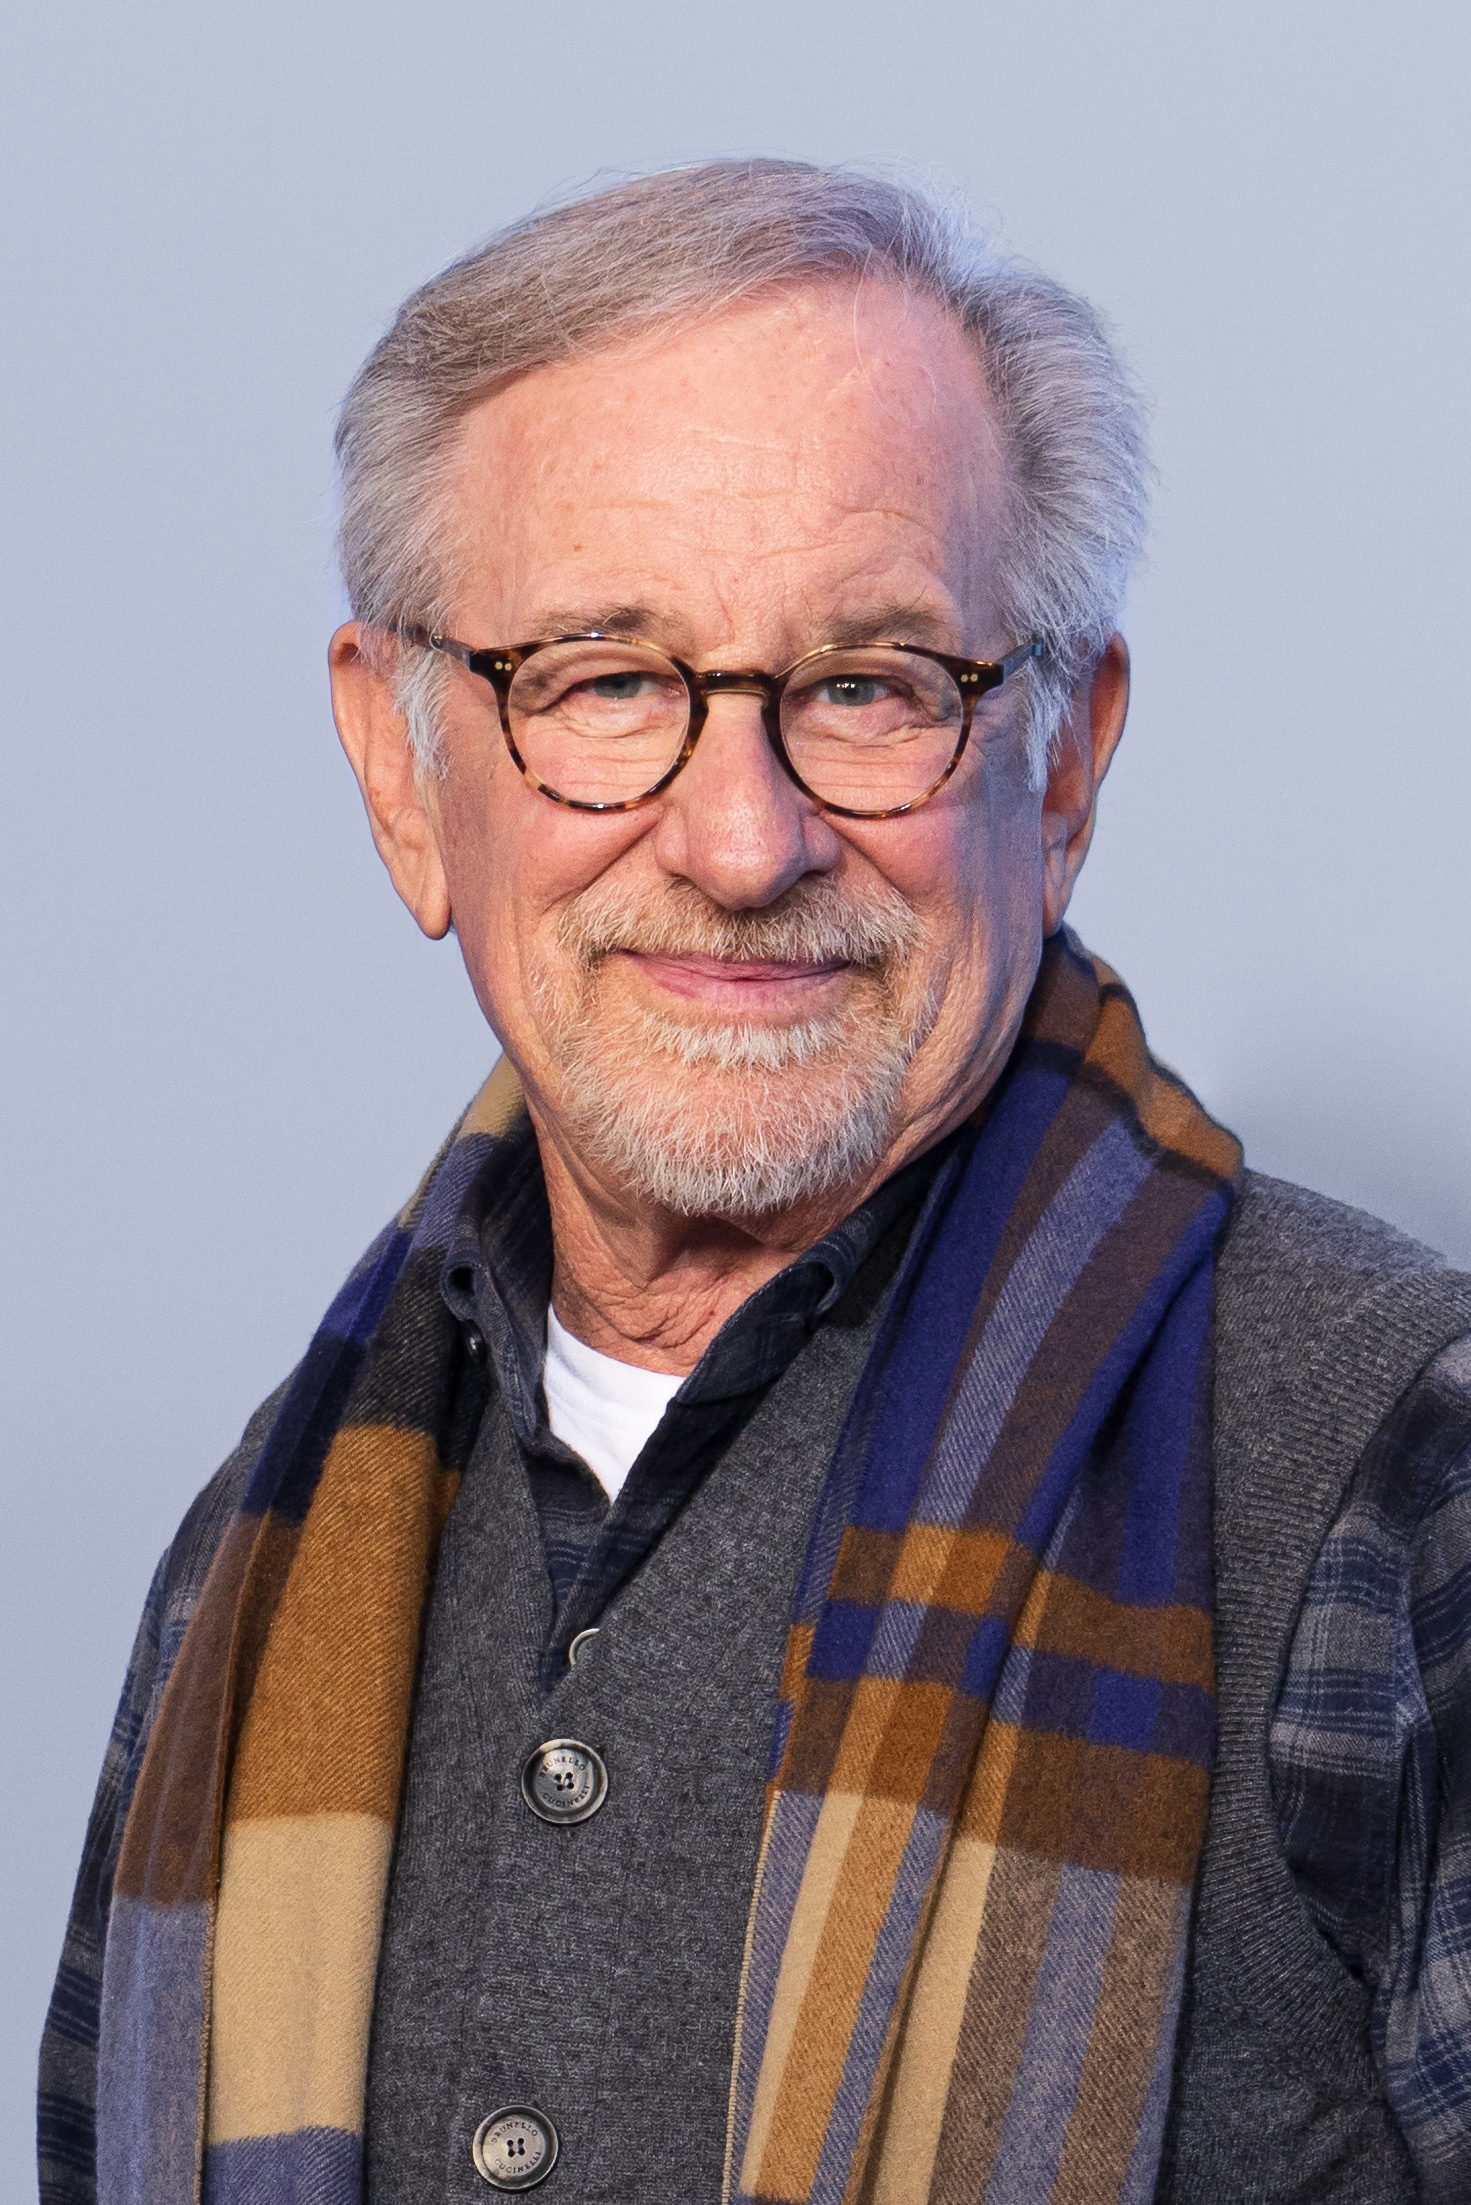 auteur Steven Spielberg de la citation Vous ne pouvez pas vous purger intellectuellement de qui vous êtes. Quoi qu'il en soit, ça va sortir dans le lavage, le film Wash. Ce que vous êtes va être pertinent, sinon pour vous-même, aux films que vous réalisez.